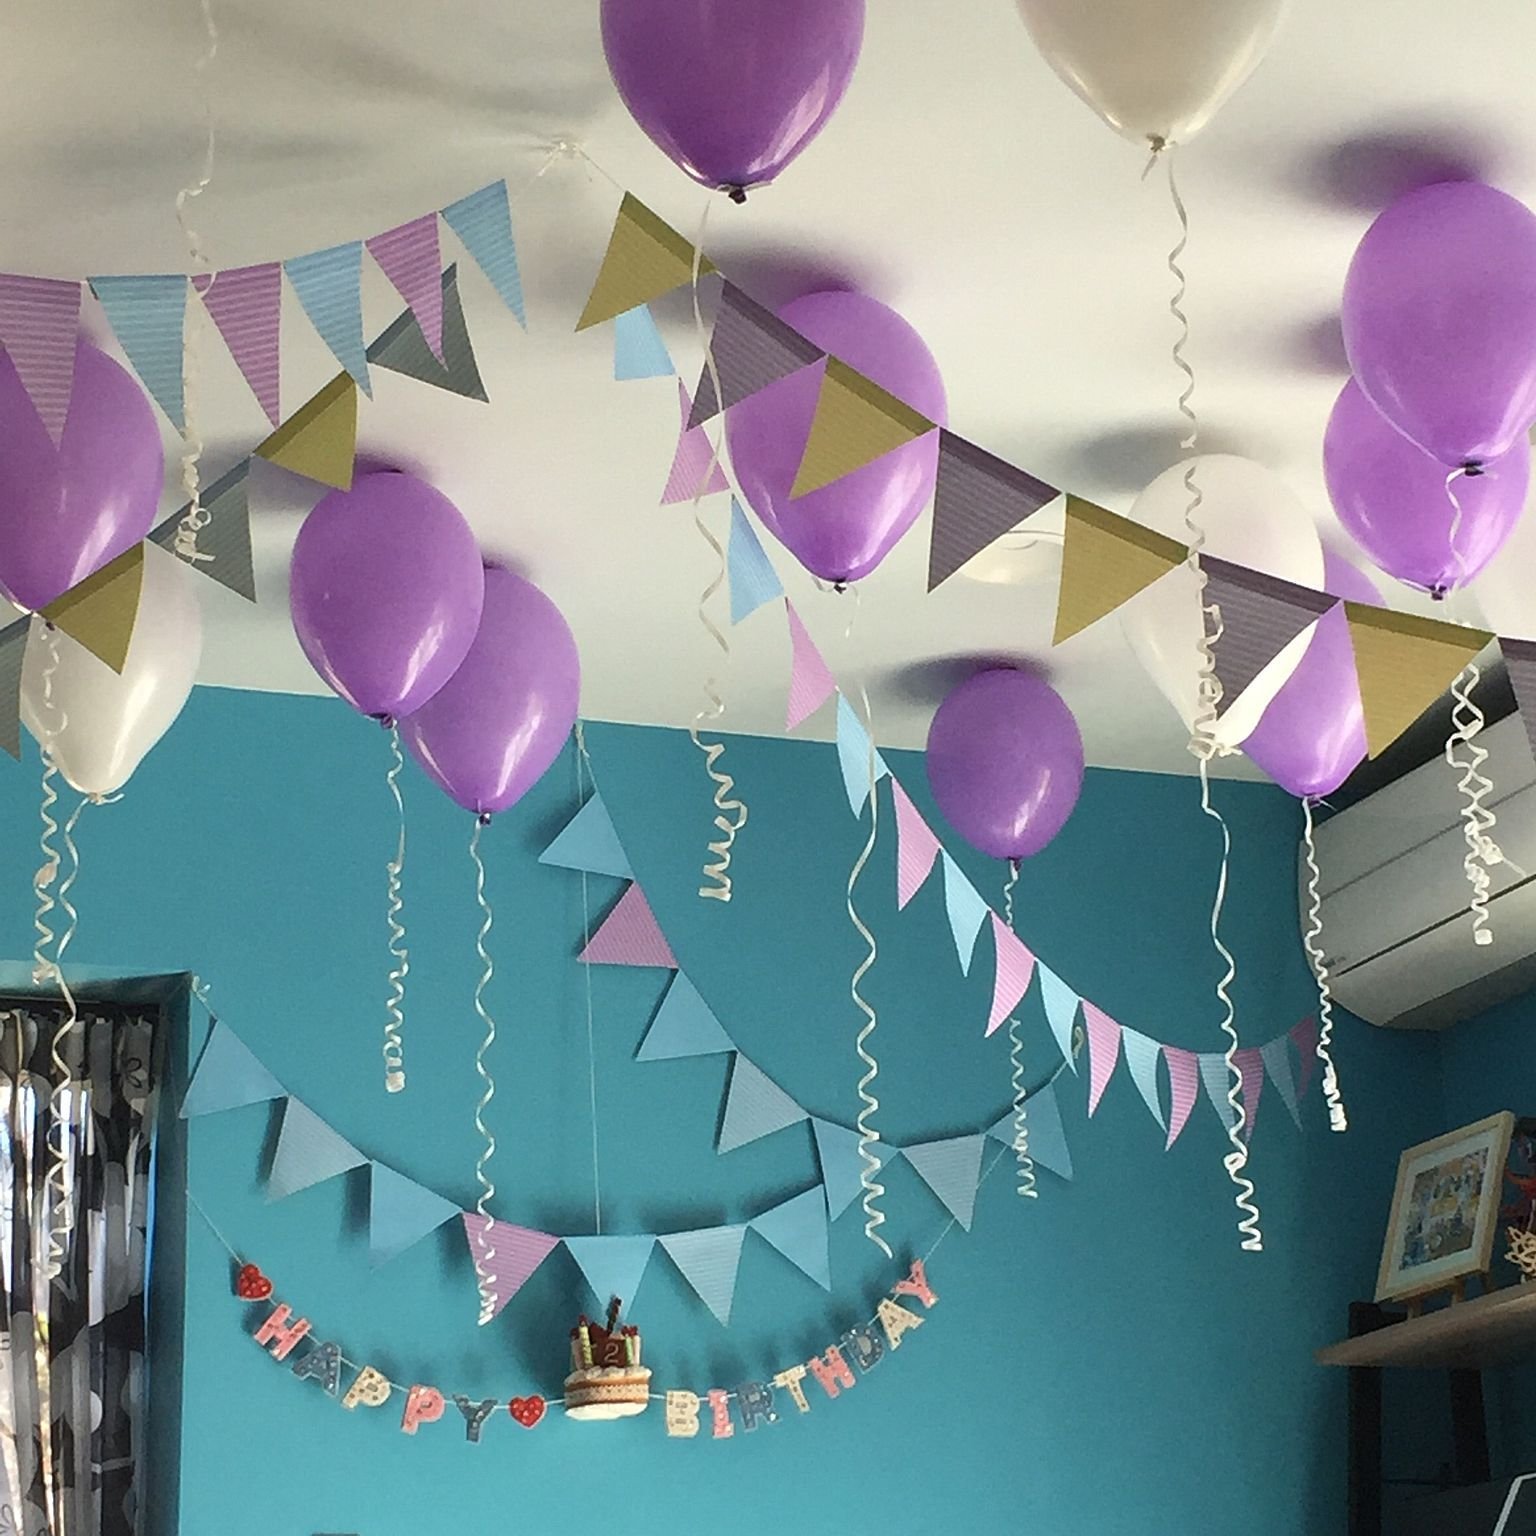 креативно украсить комнату на день рождения